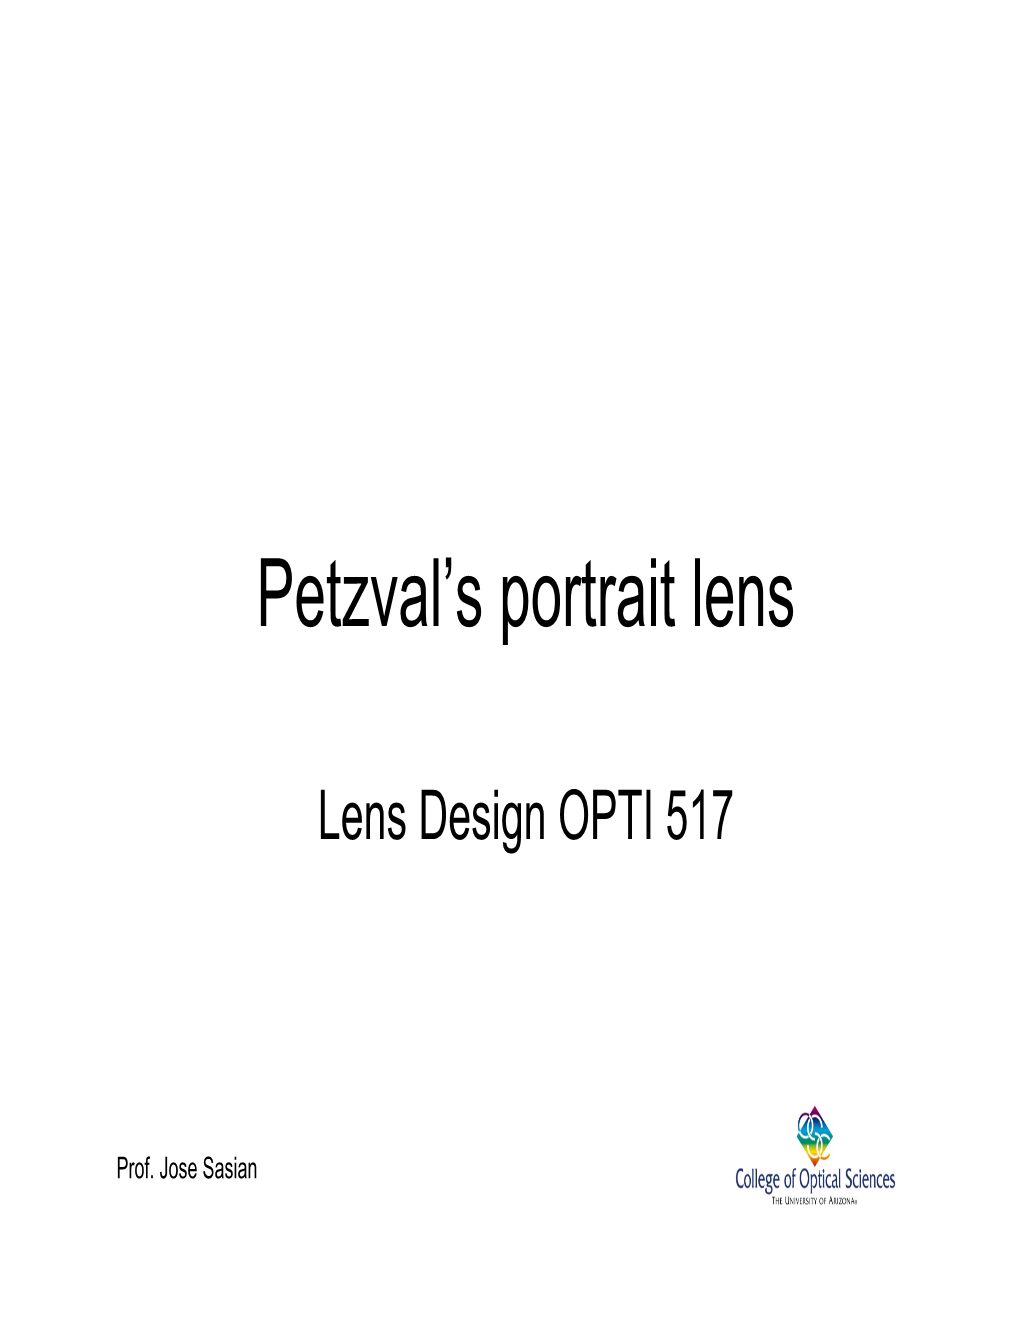 Petzval's Portrait Lens